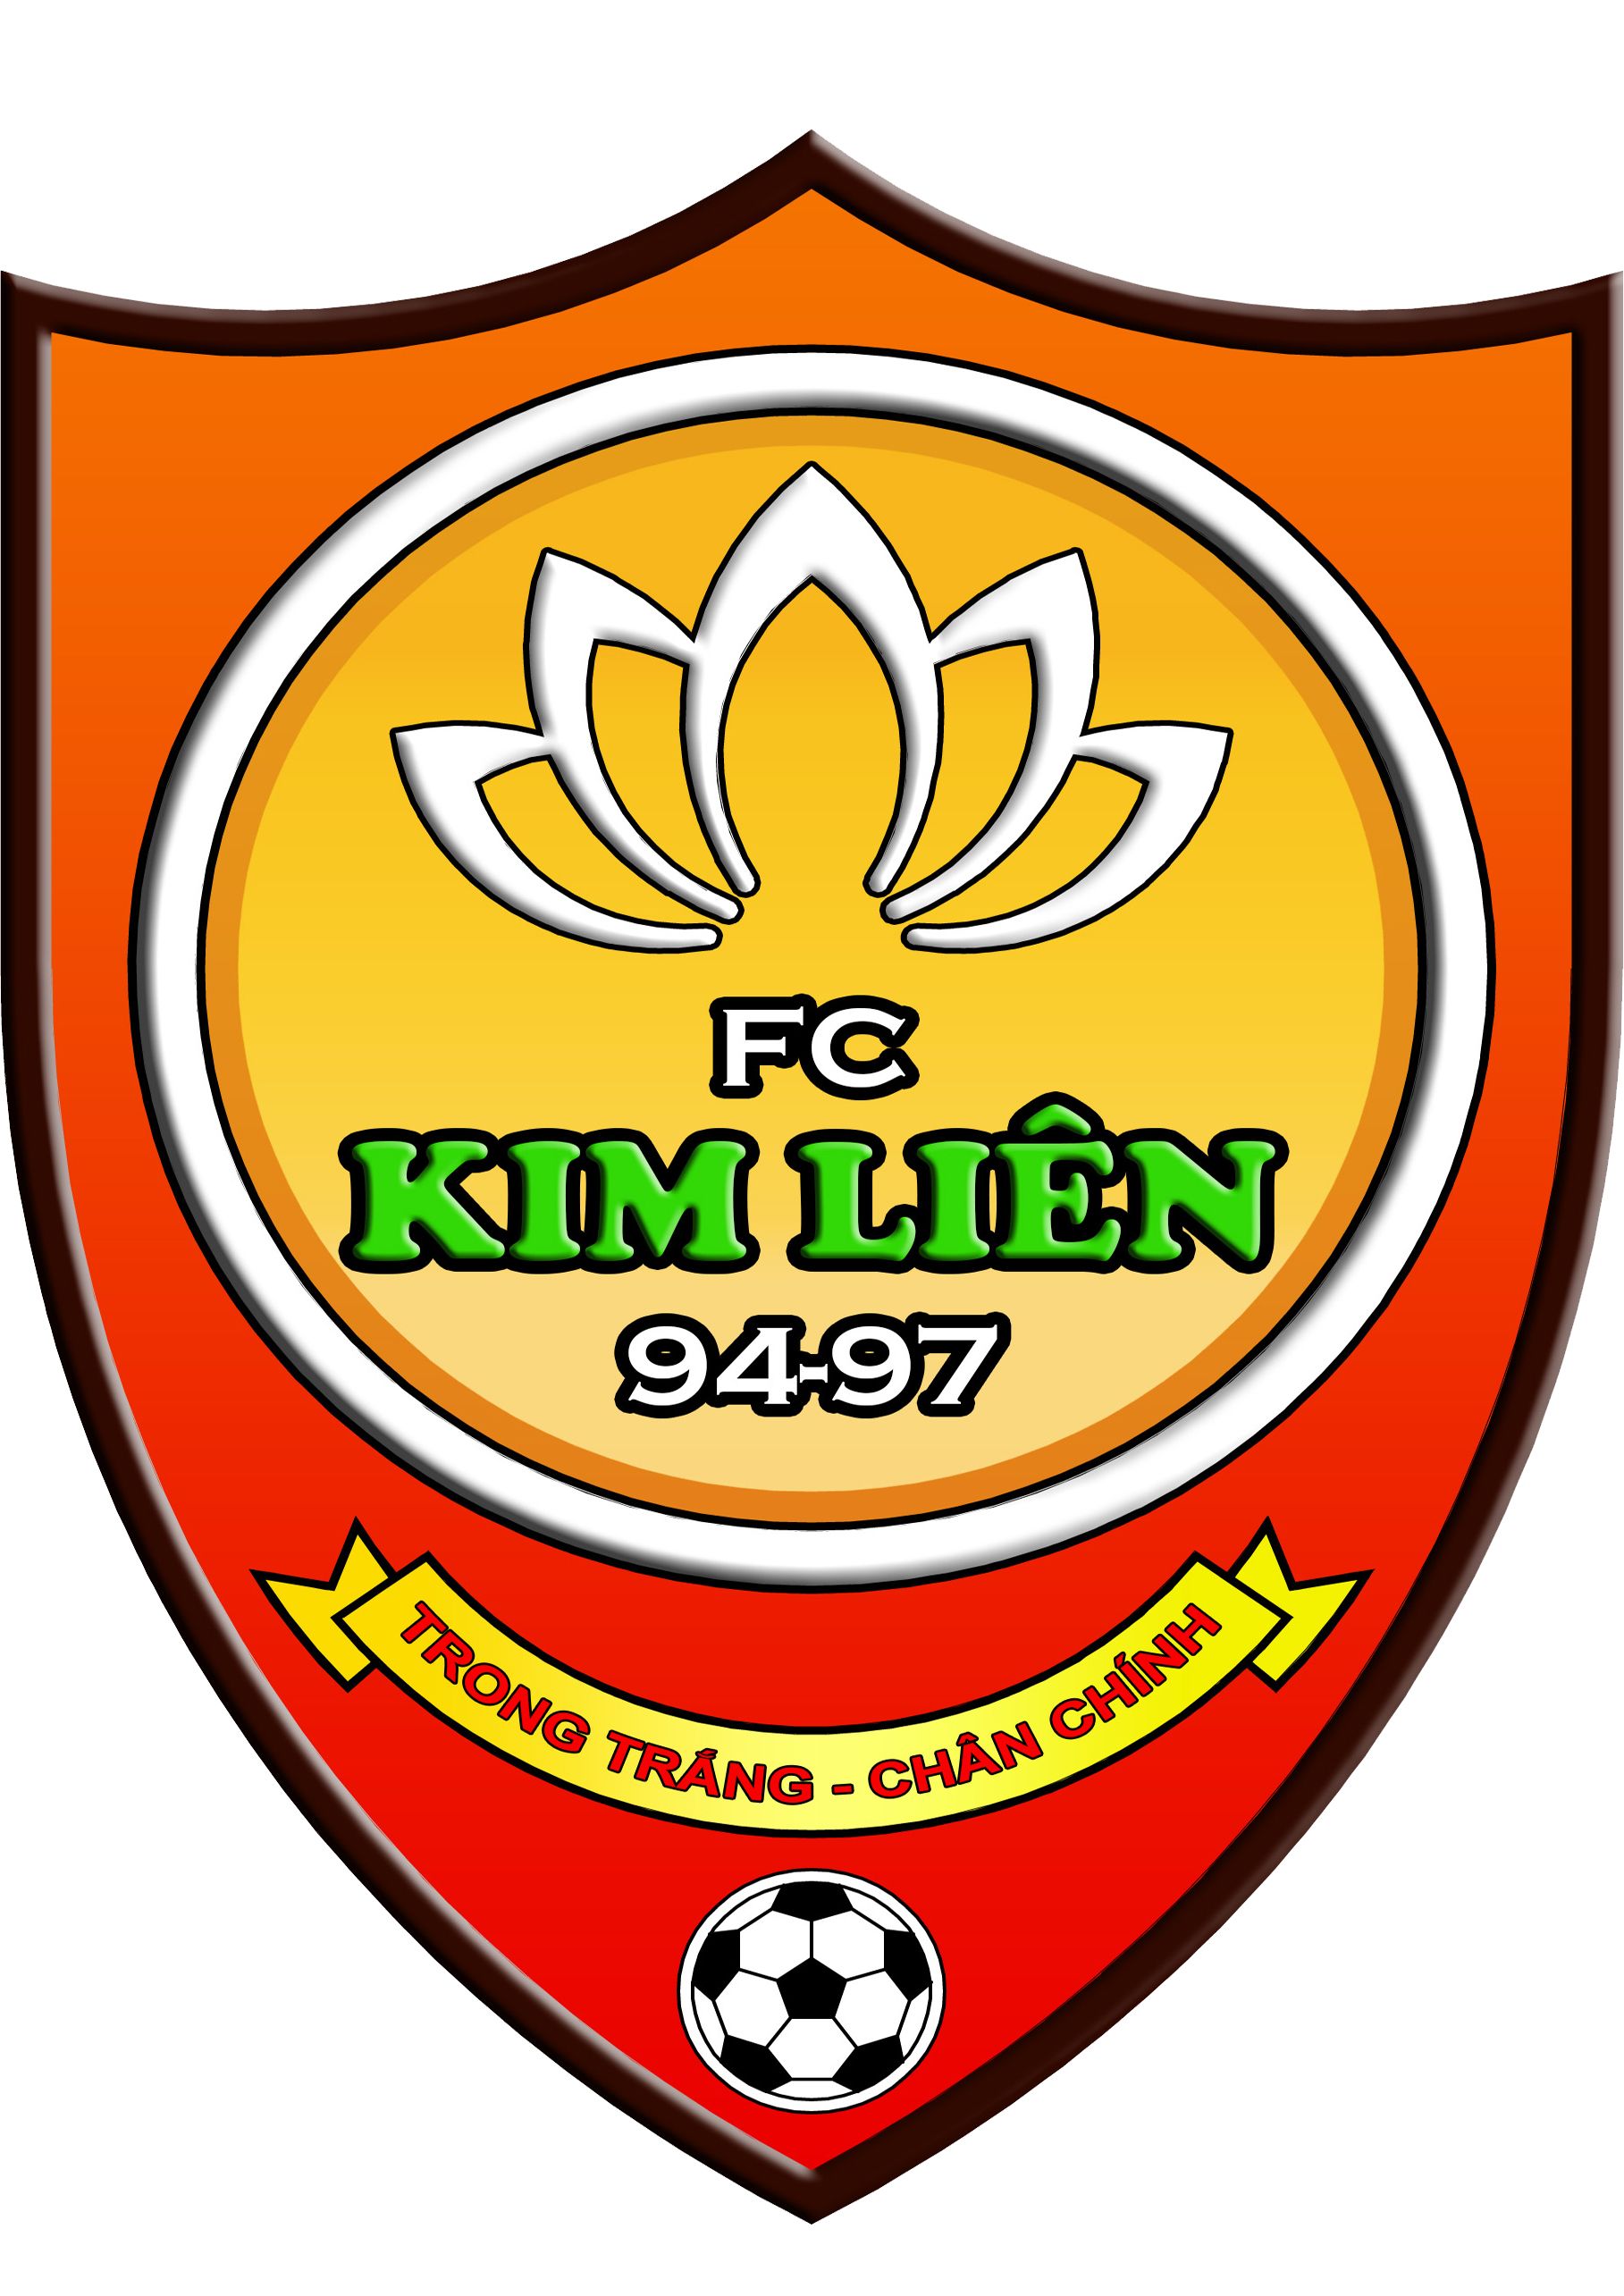 FC Kim Liên 9497